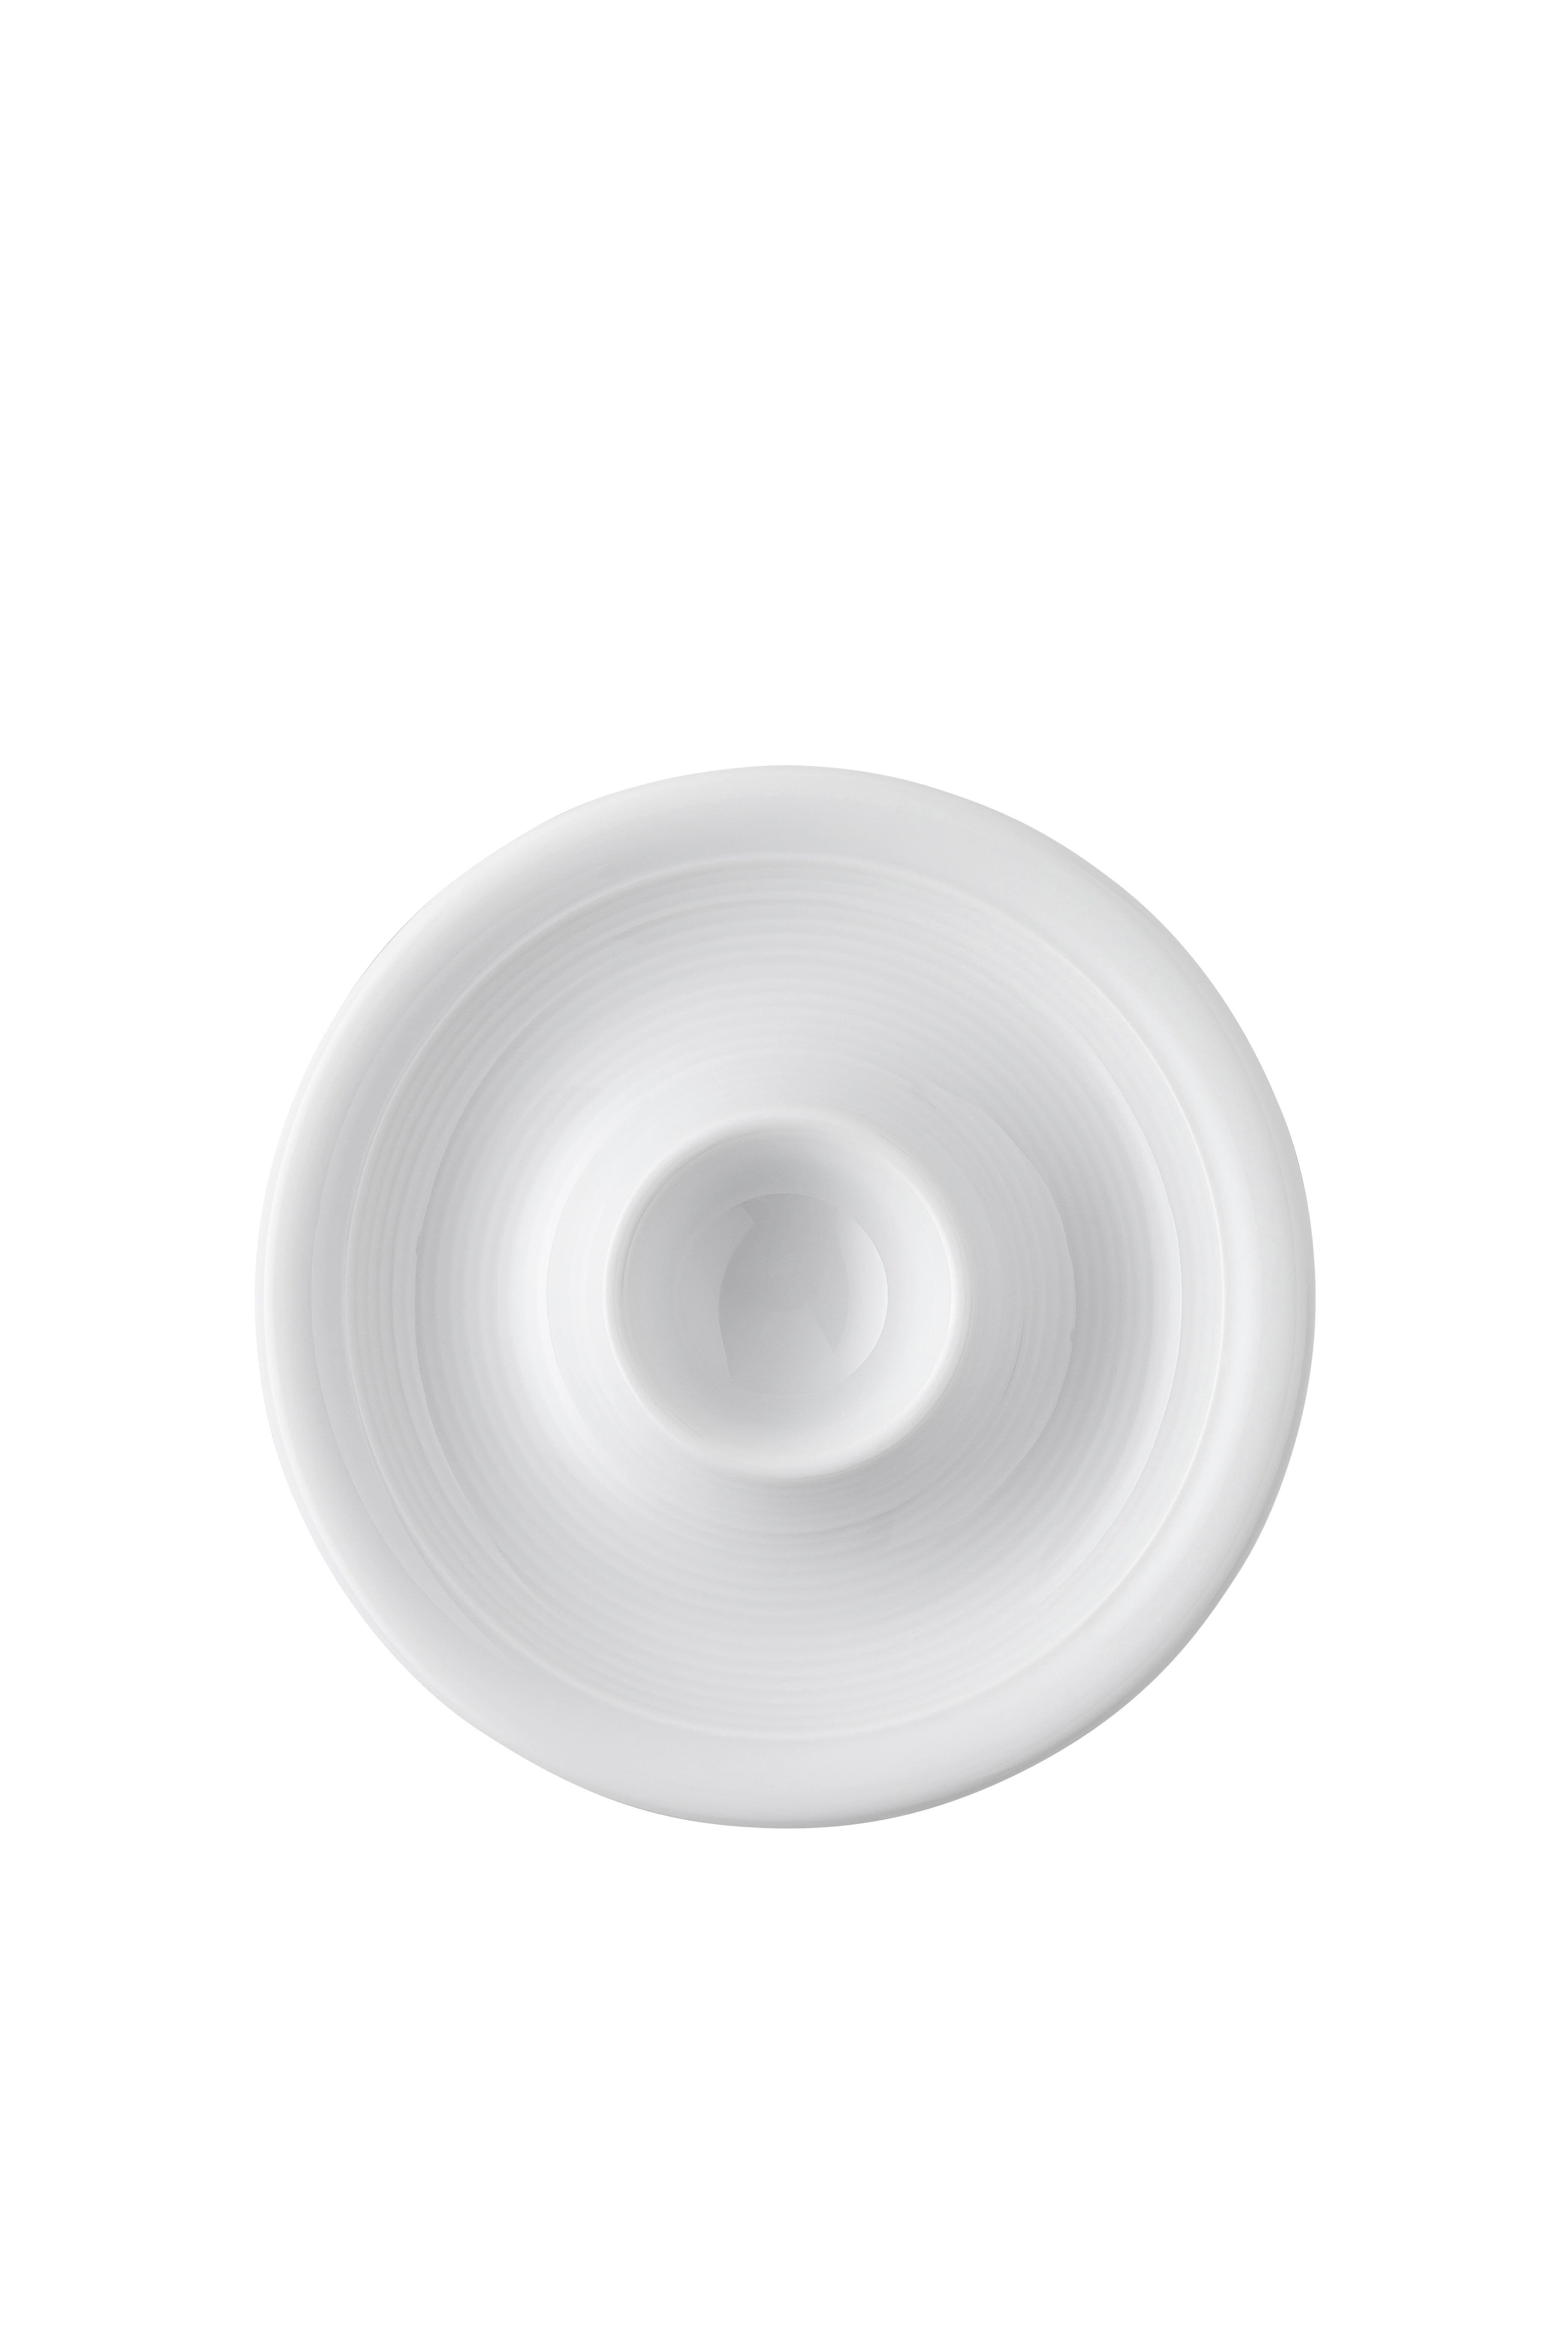 EIERBECHER Keramik Porzellan  - Weiß, Design, Keramik (14/2,5cm) - Thomas